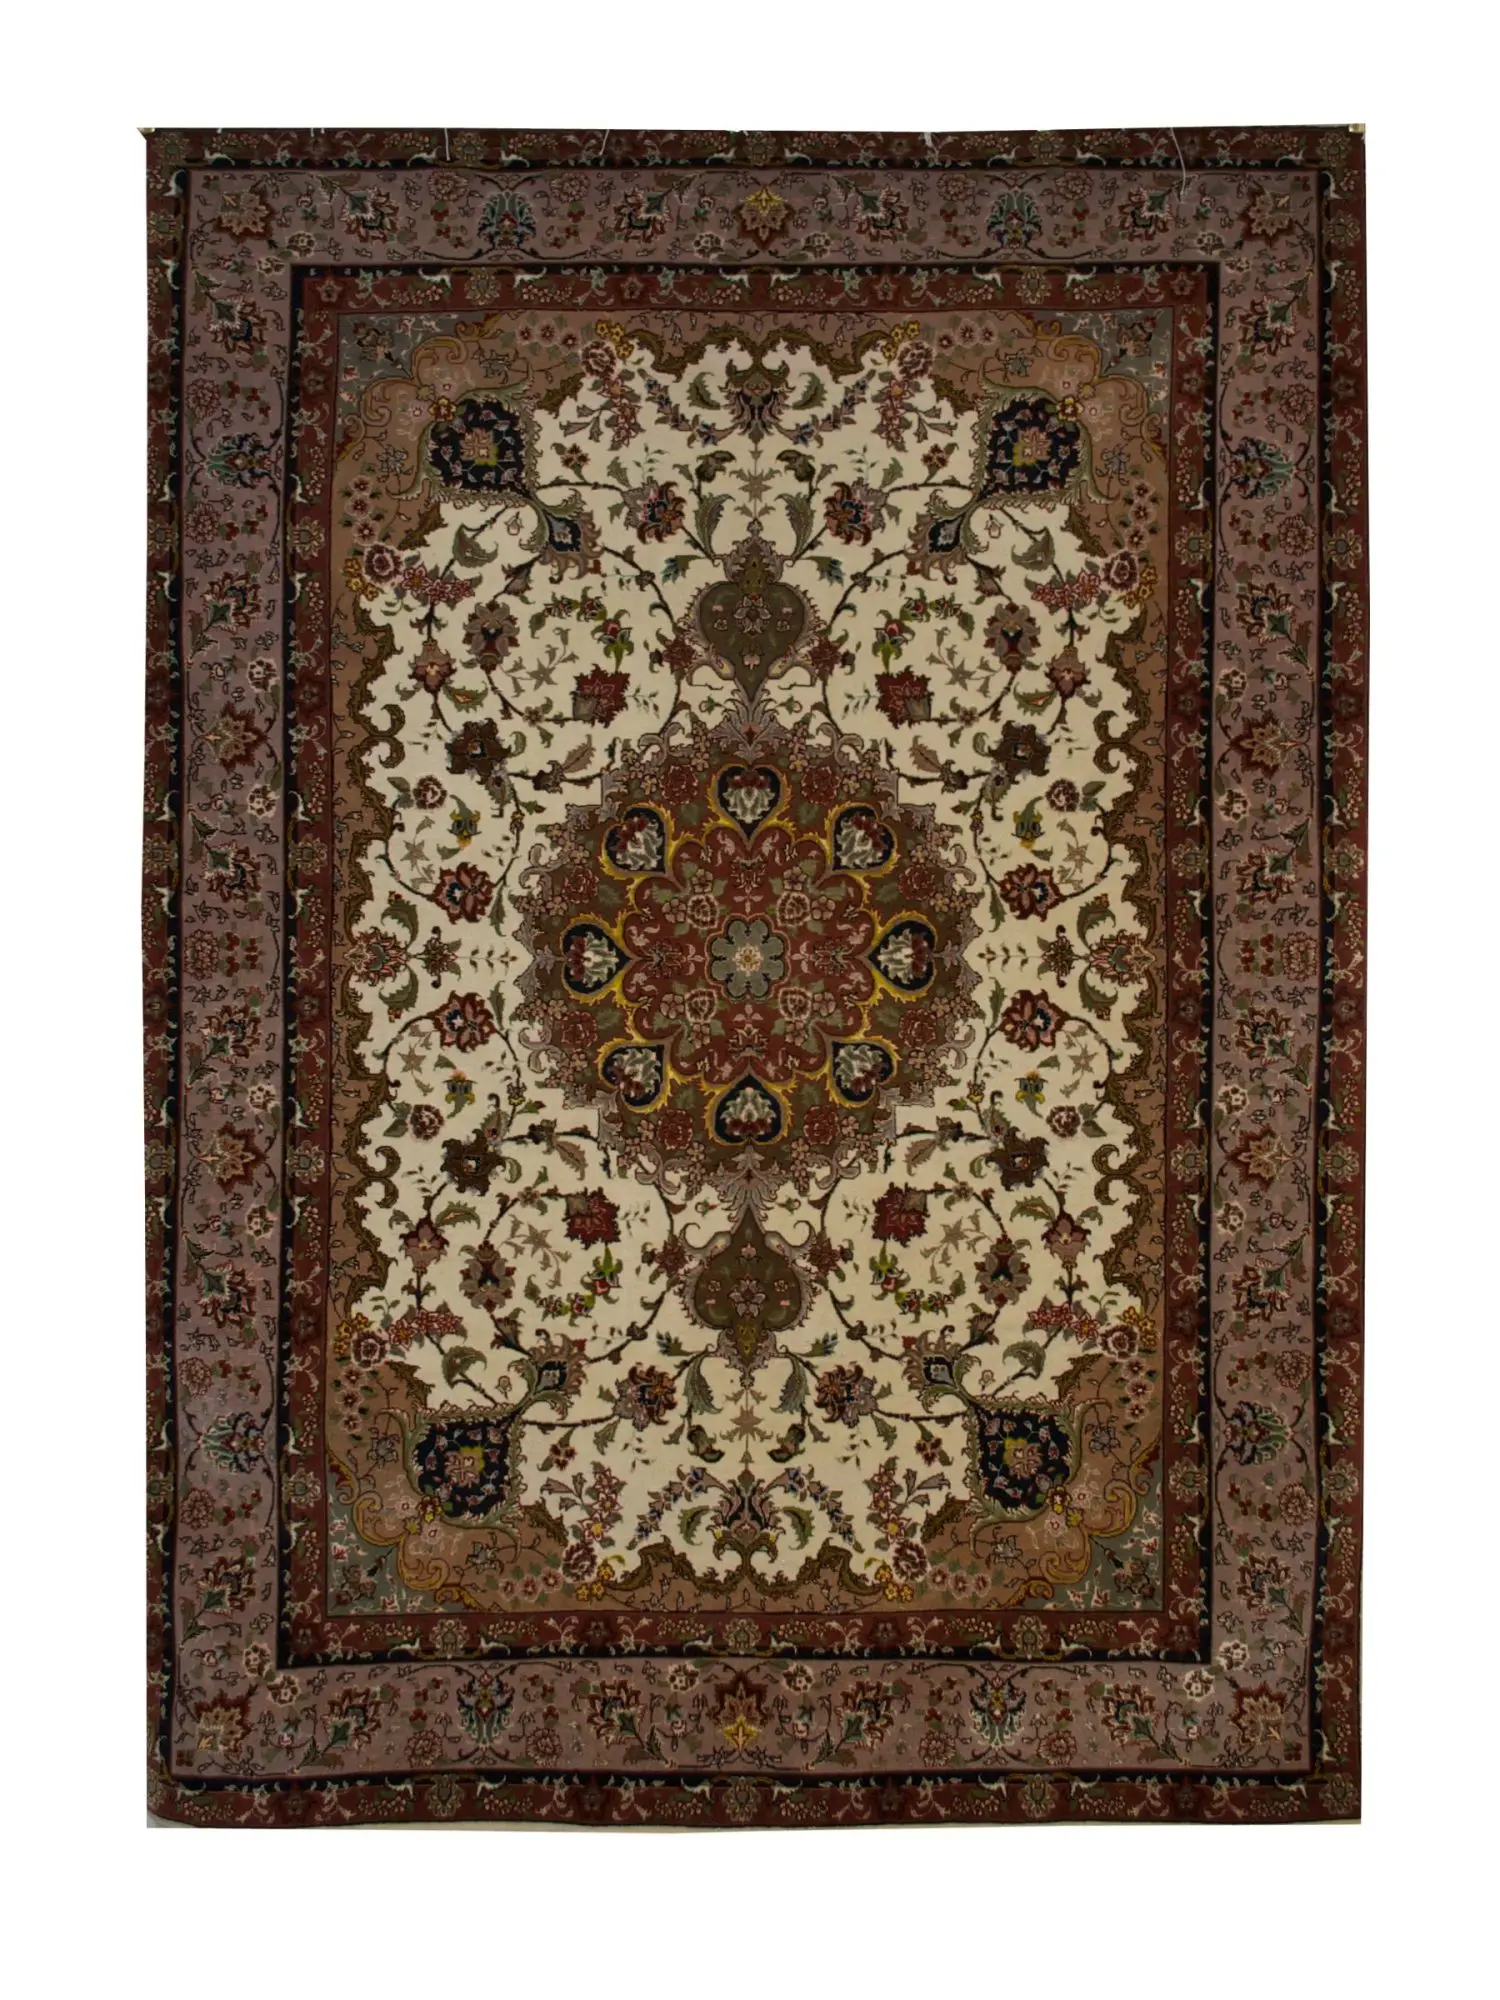 Persian Tabriz rug 4' 10" x 6' 10" - Shabahang Royal Carpet